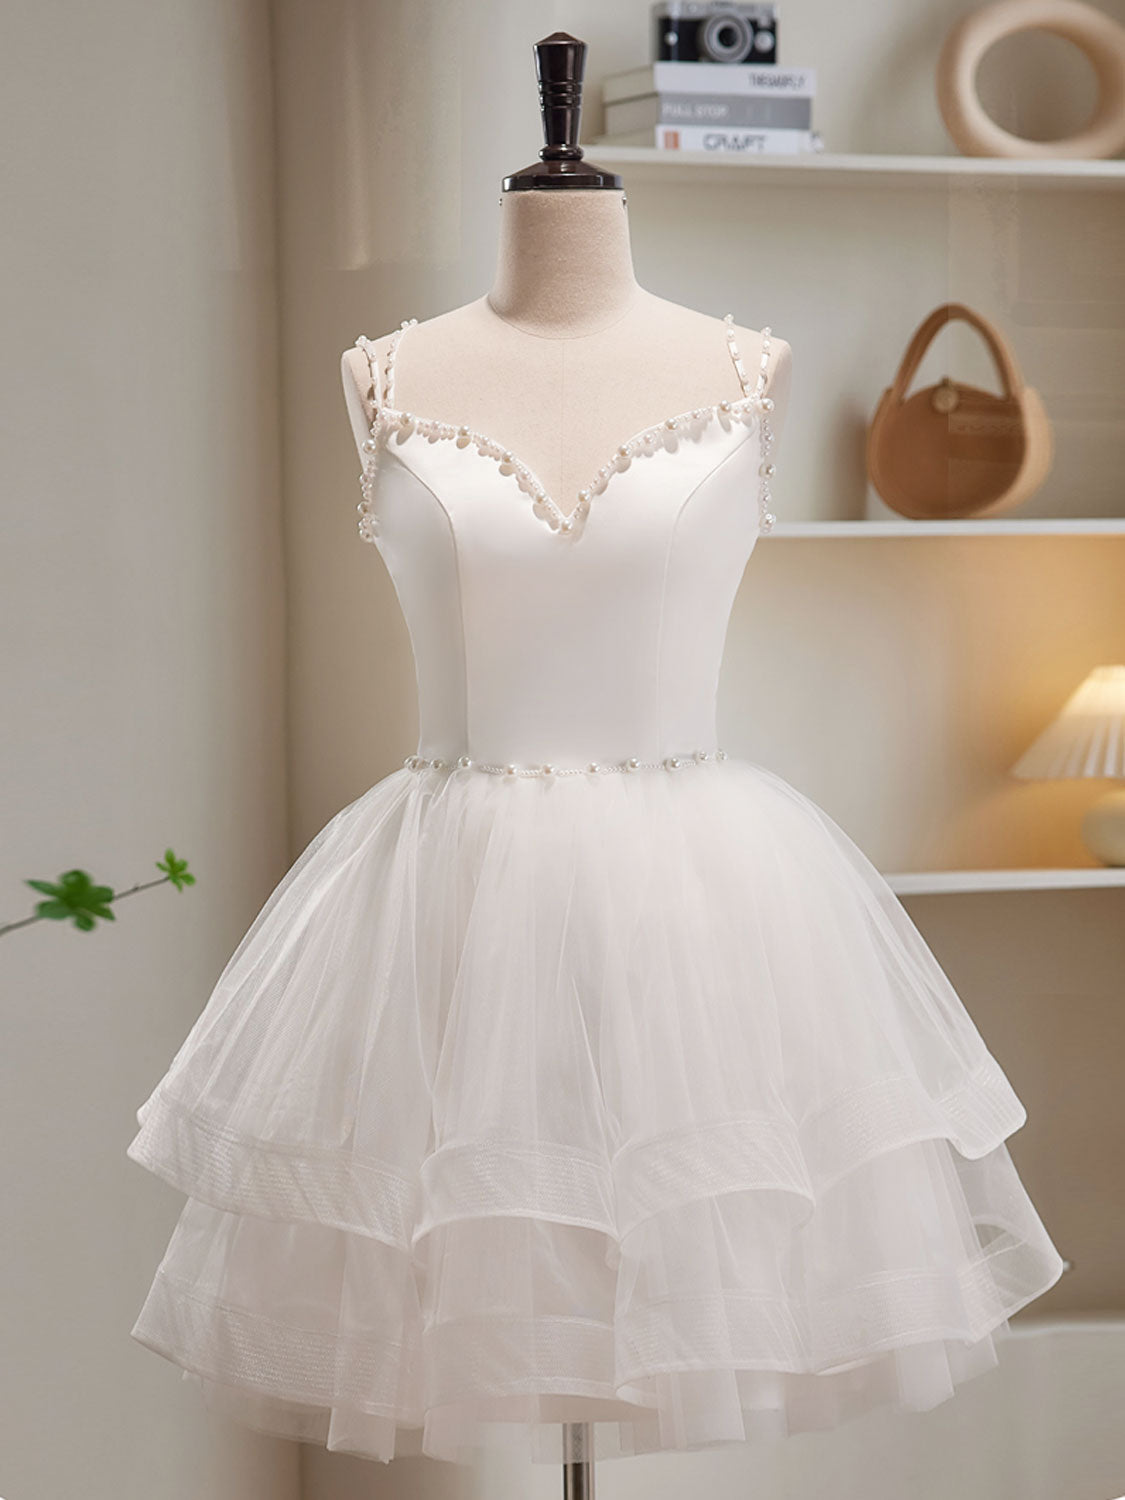 White Tulle Short Prom Dresses For Black girls For Women, Cute White Puffy Homecoming Dresses